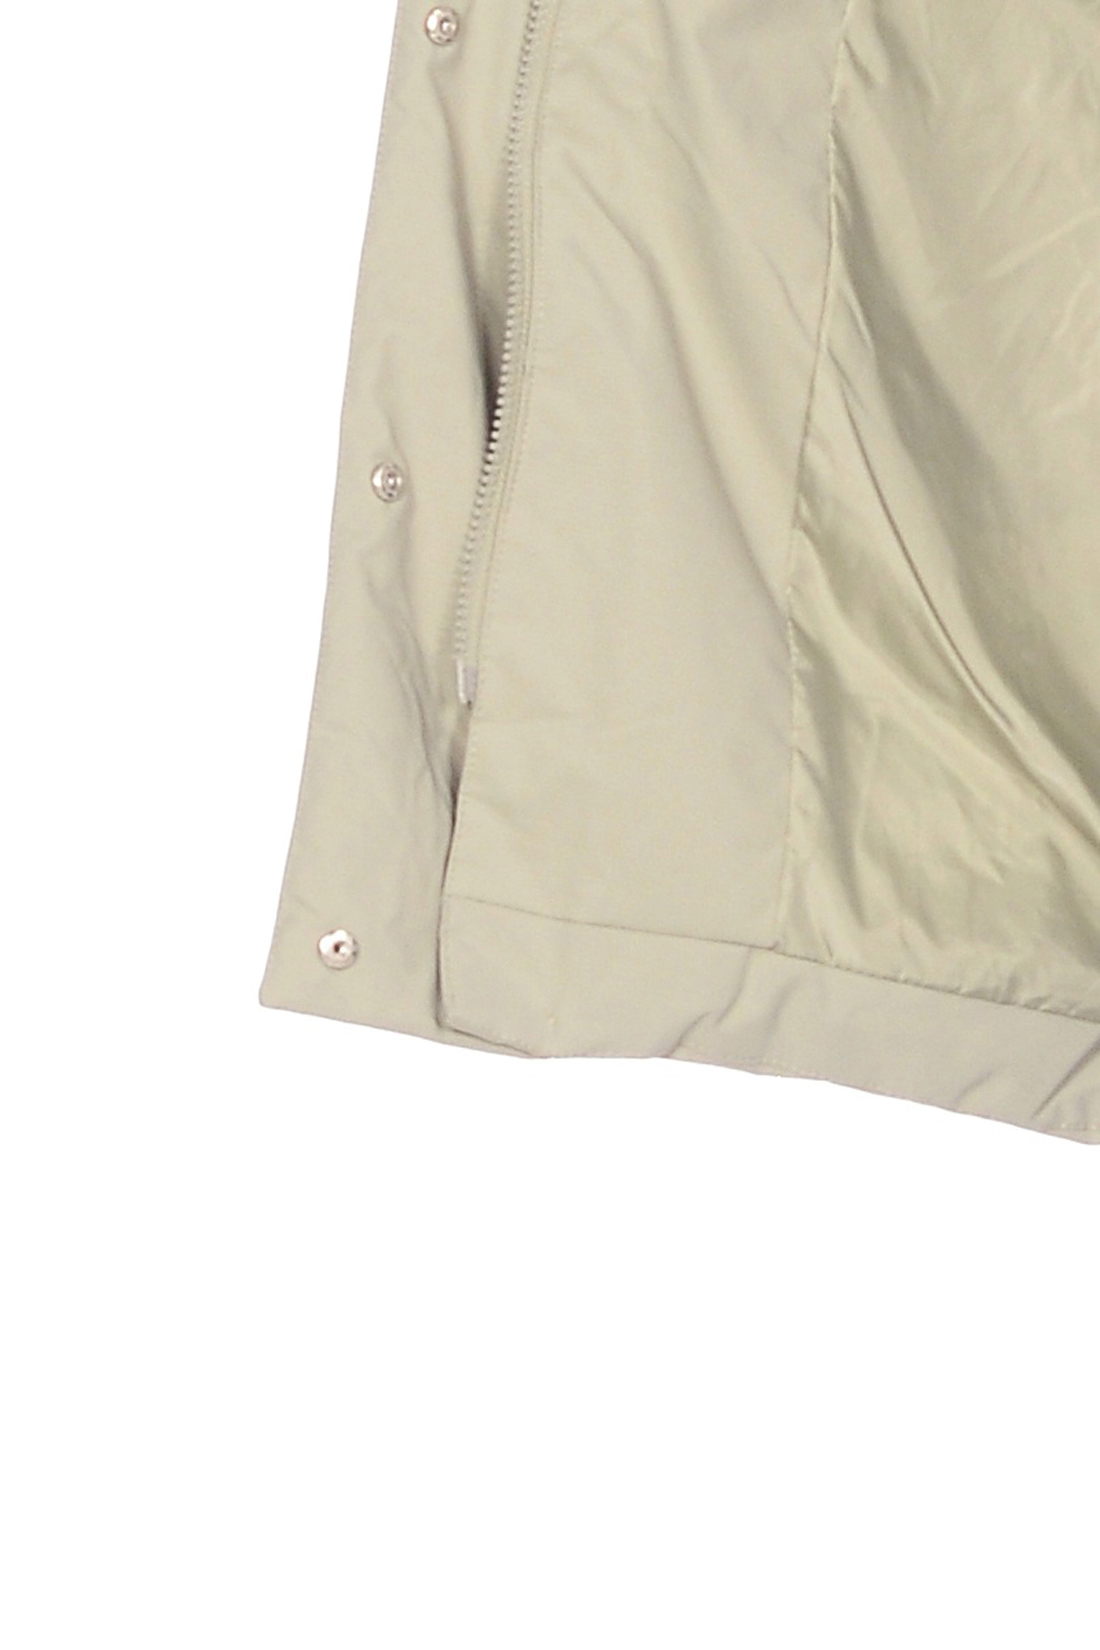 Пуховик с пышным мехом енота (арт. baon B008584), размер XL, цвет зеленый Пуховик с пышным мехом енота (арт. baon B008584) - фото 4